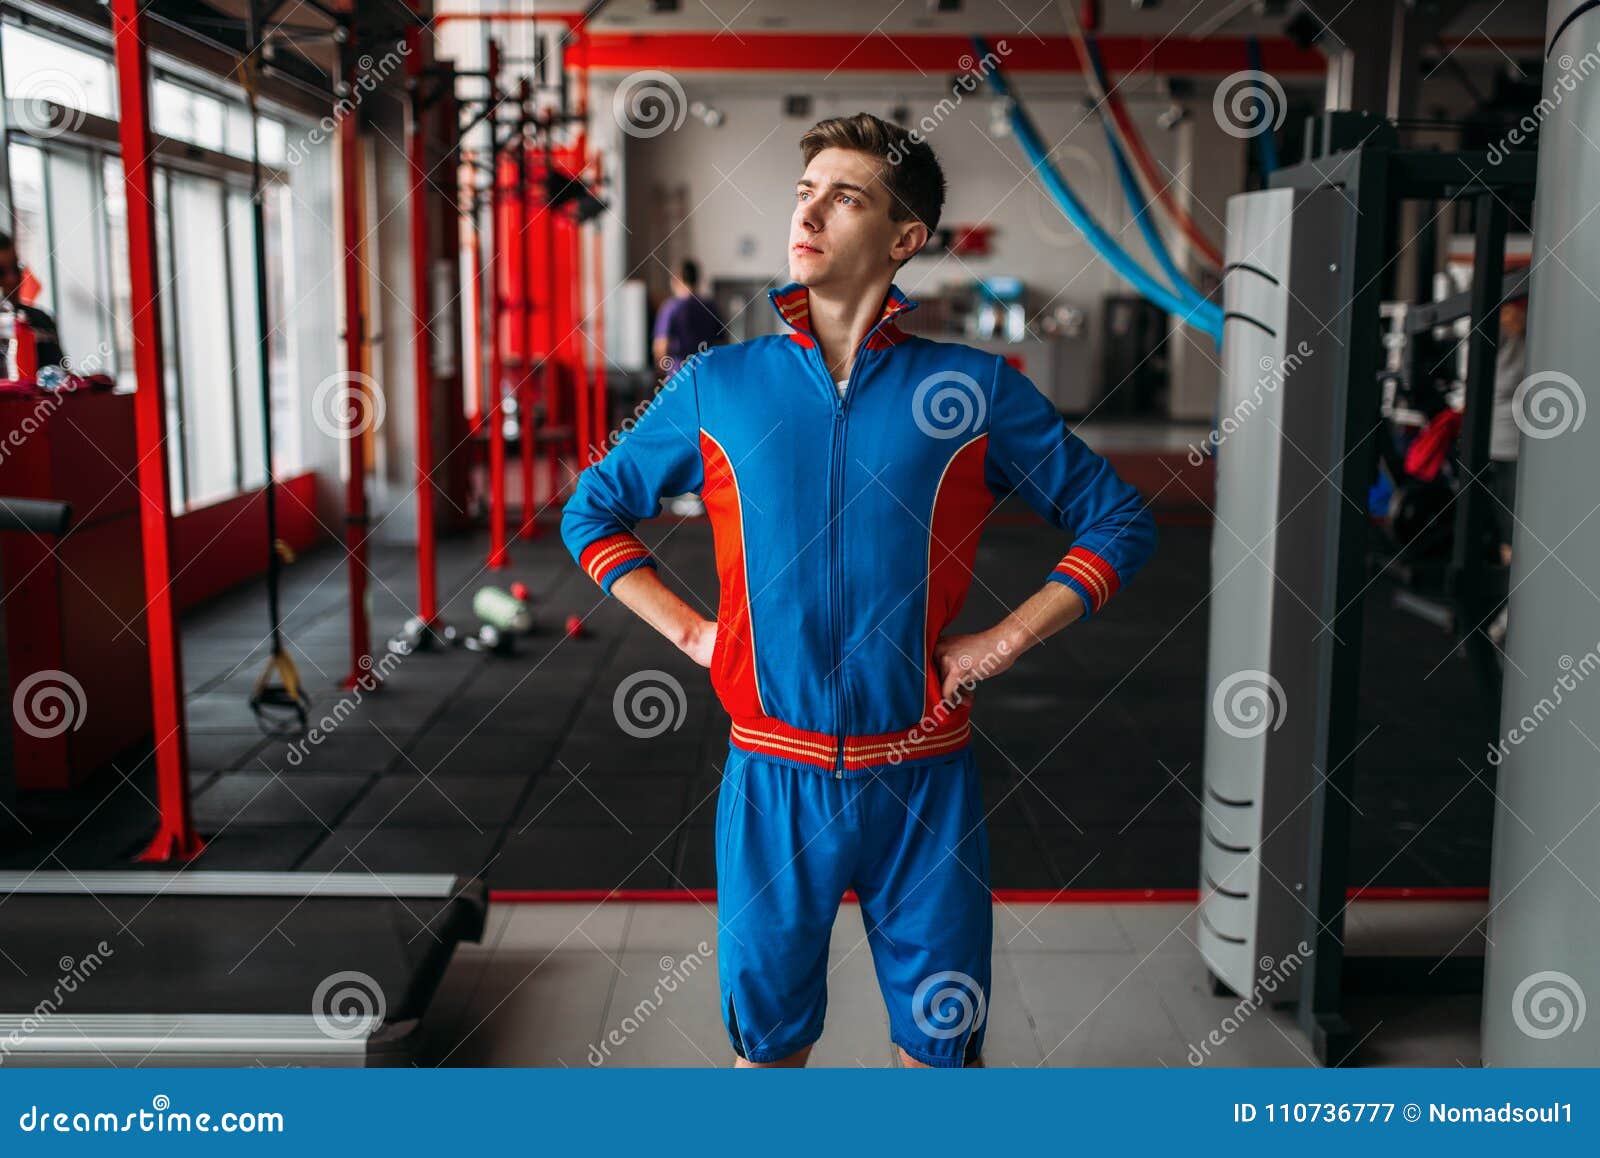 El Hombre Flaco En Ropa De Deportes Muestra Sus Músculos, Gimnasio Imagen  de archivo - Imagen de fino, divertido: 110736777